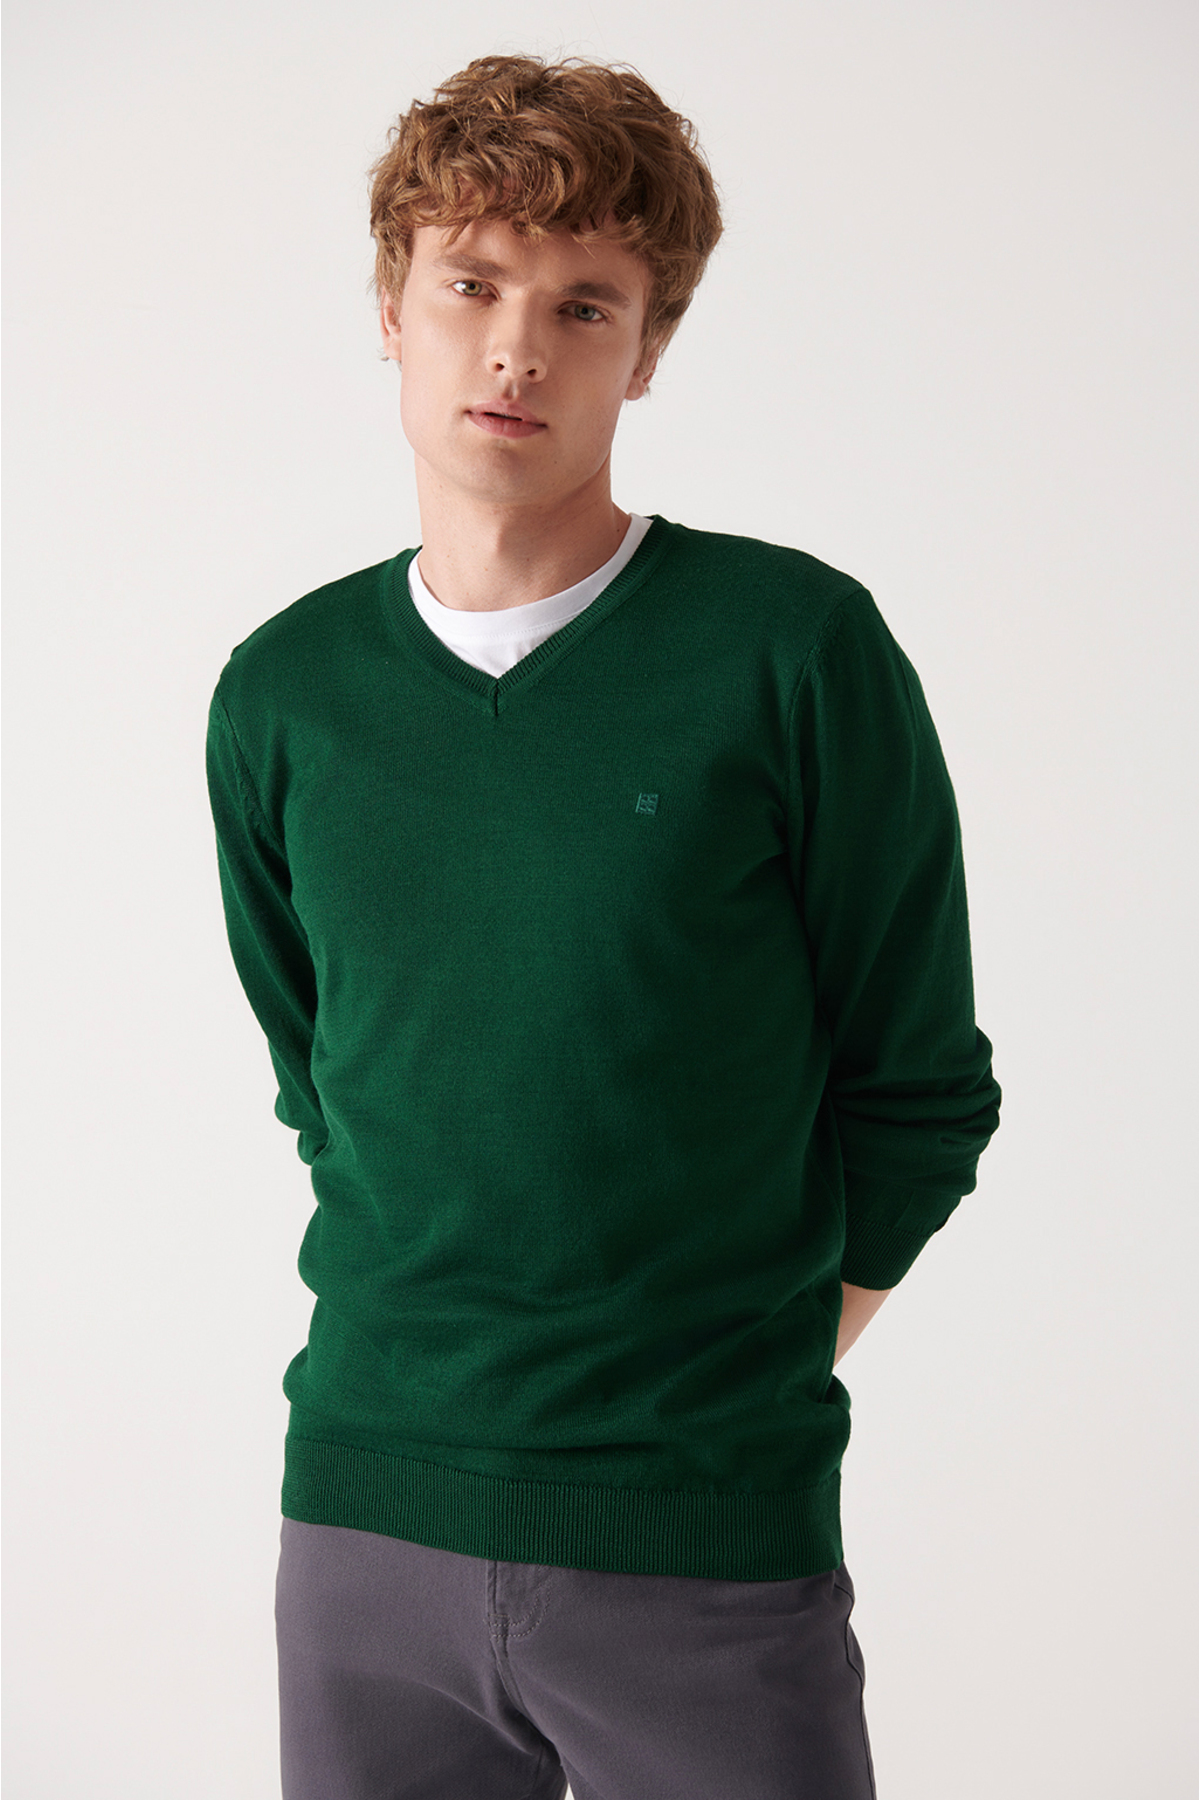 Levně Avva Men's Green V-Neck Wool Blend Standard Fit Regular Cut Knitwear Sweater